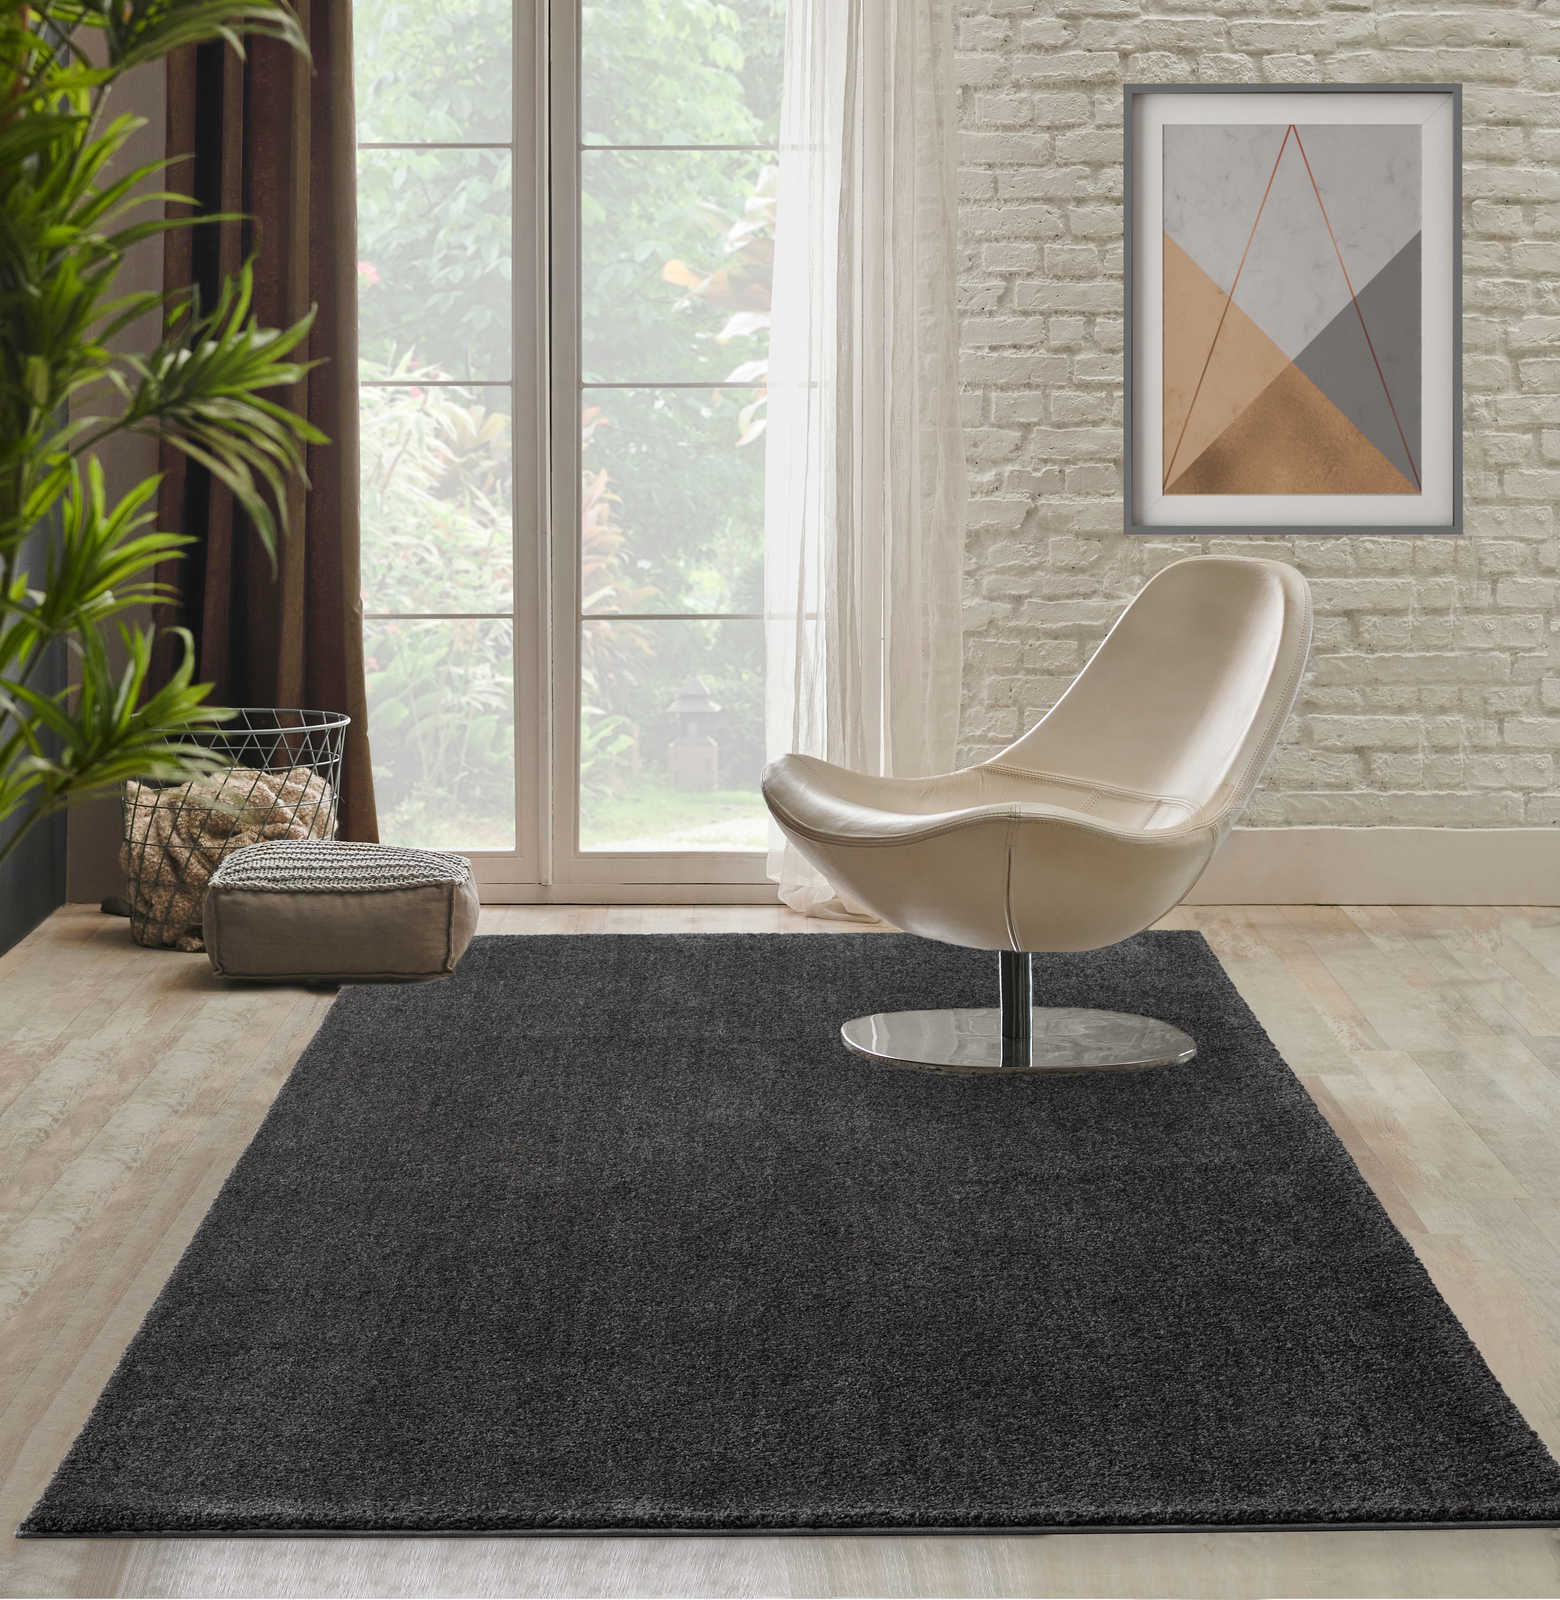 Soft short pile carpet in anthracite - 110 x 60 cm
